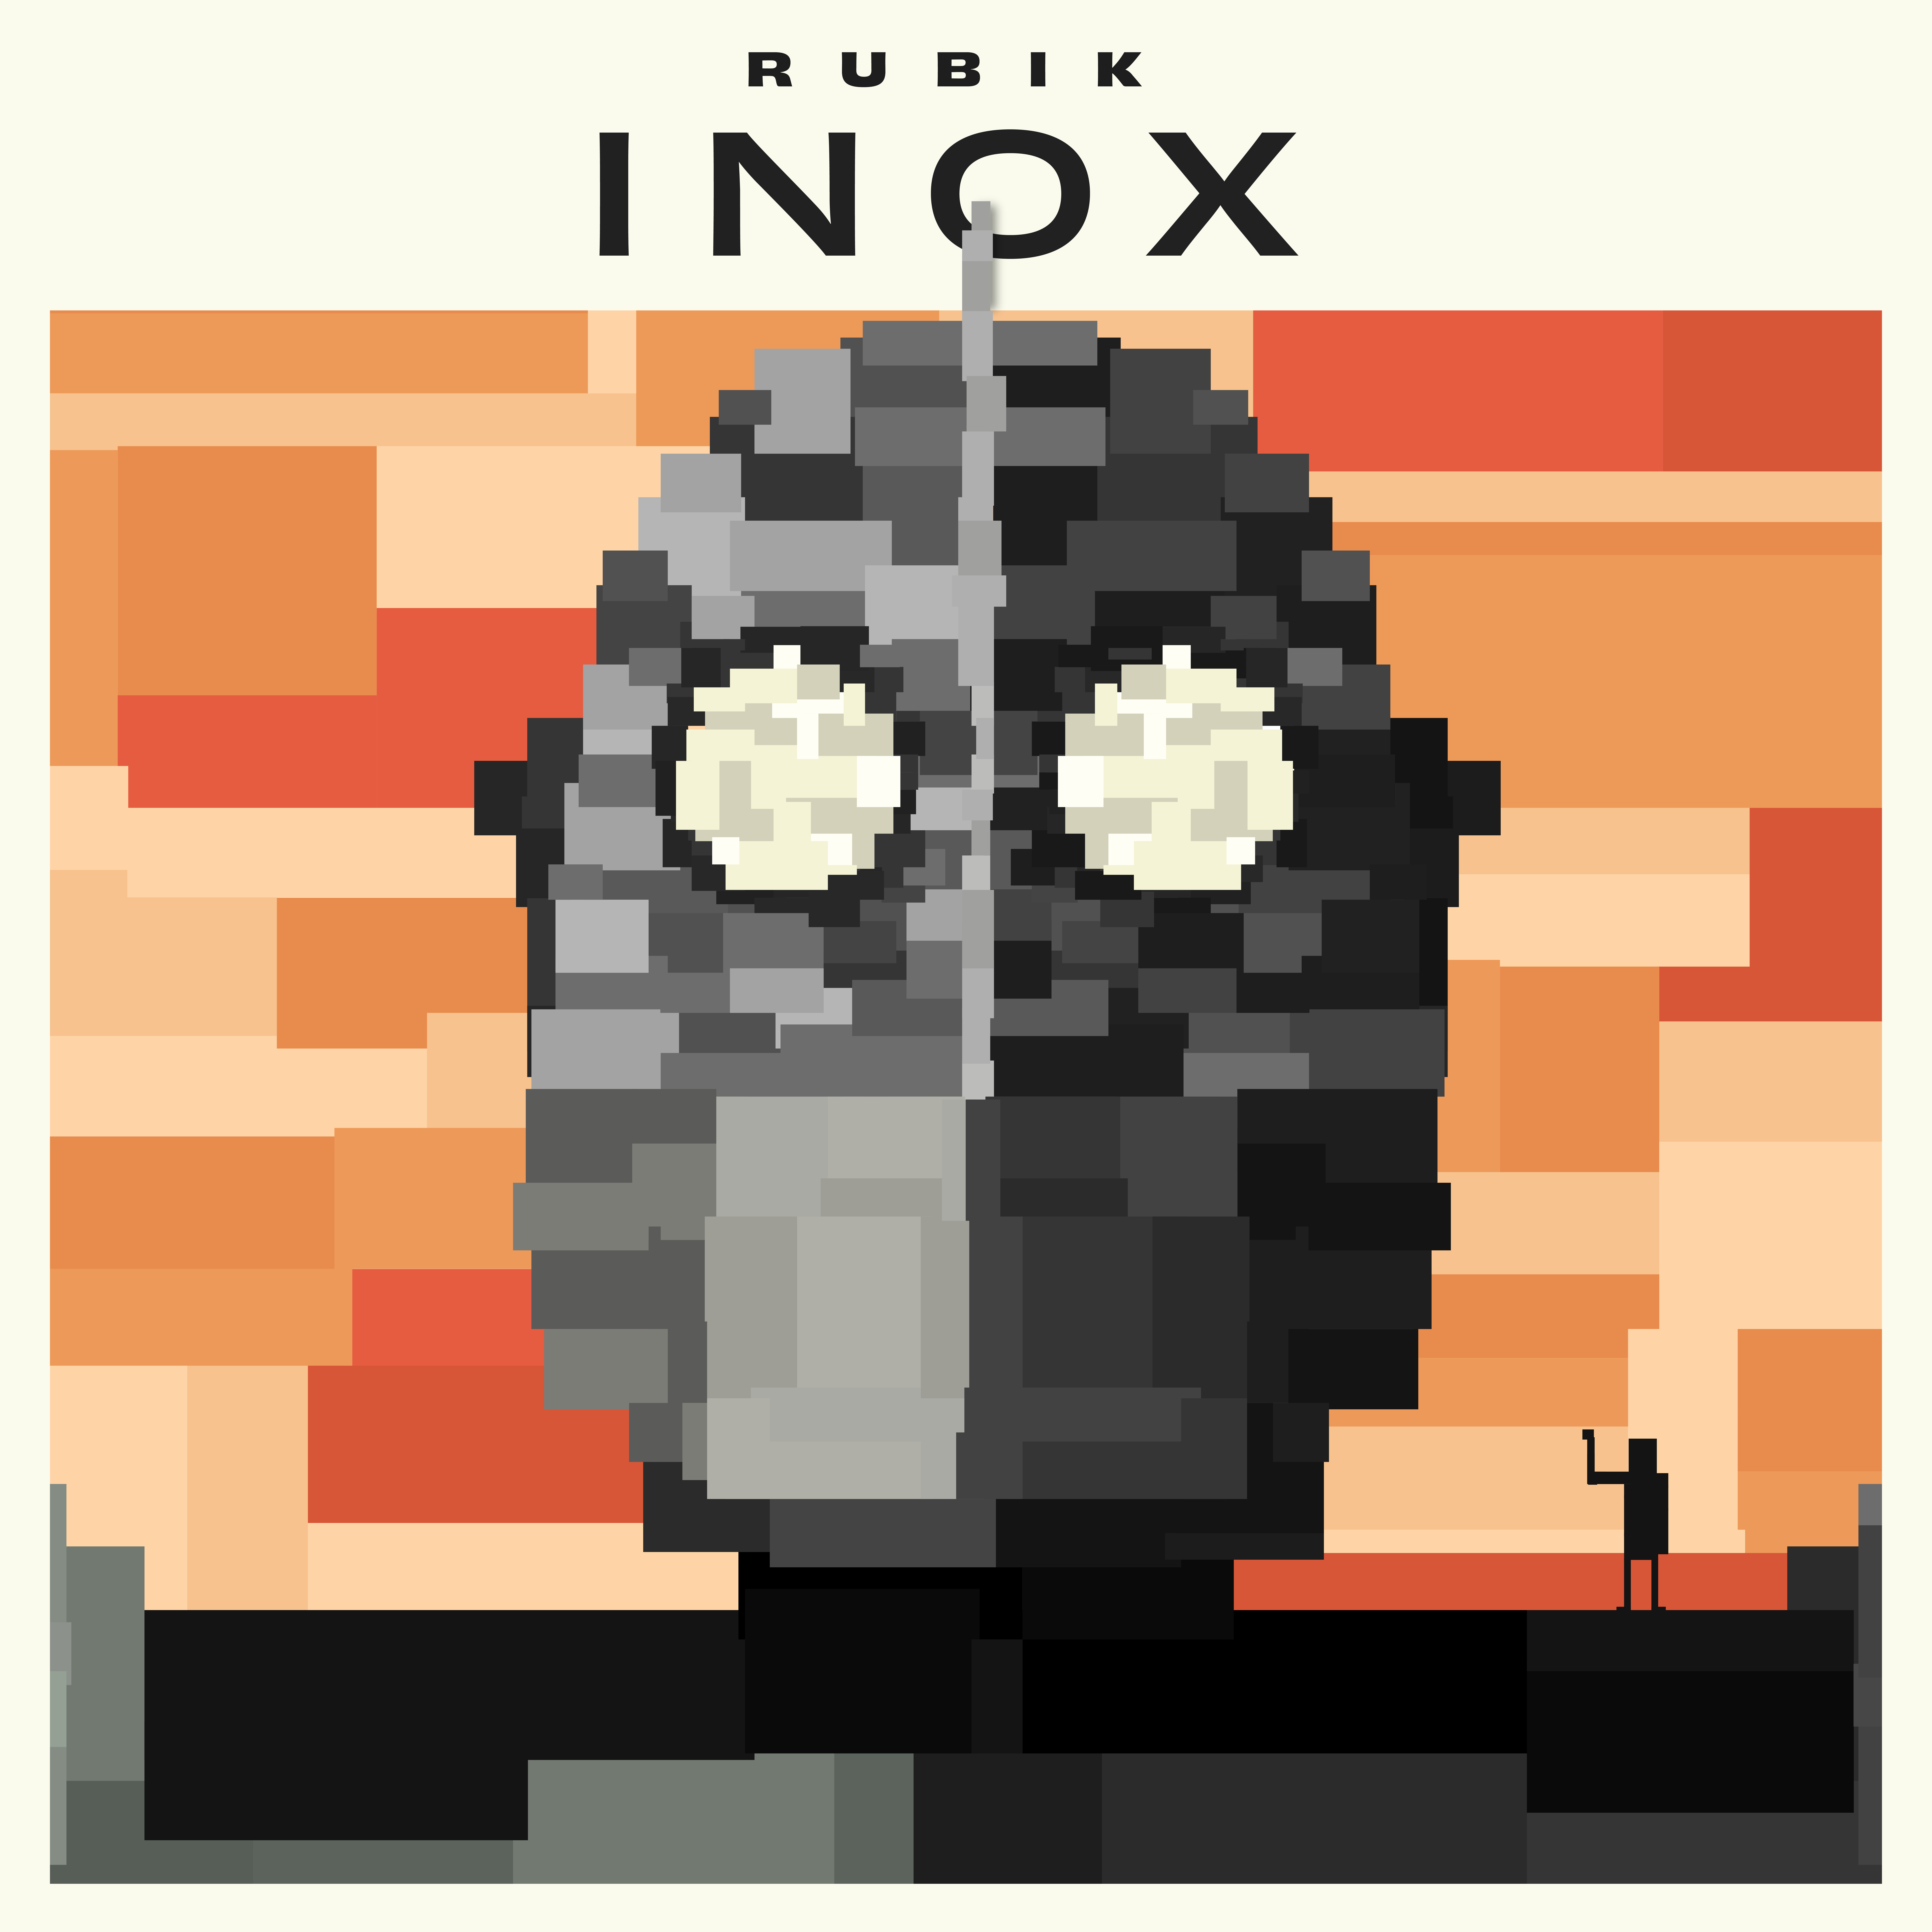 inox - la copertina del singolo di rubik, che rappresenta il disegno di un unomo di metallo, stile robot